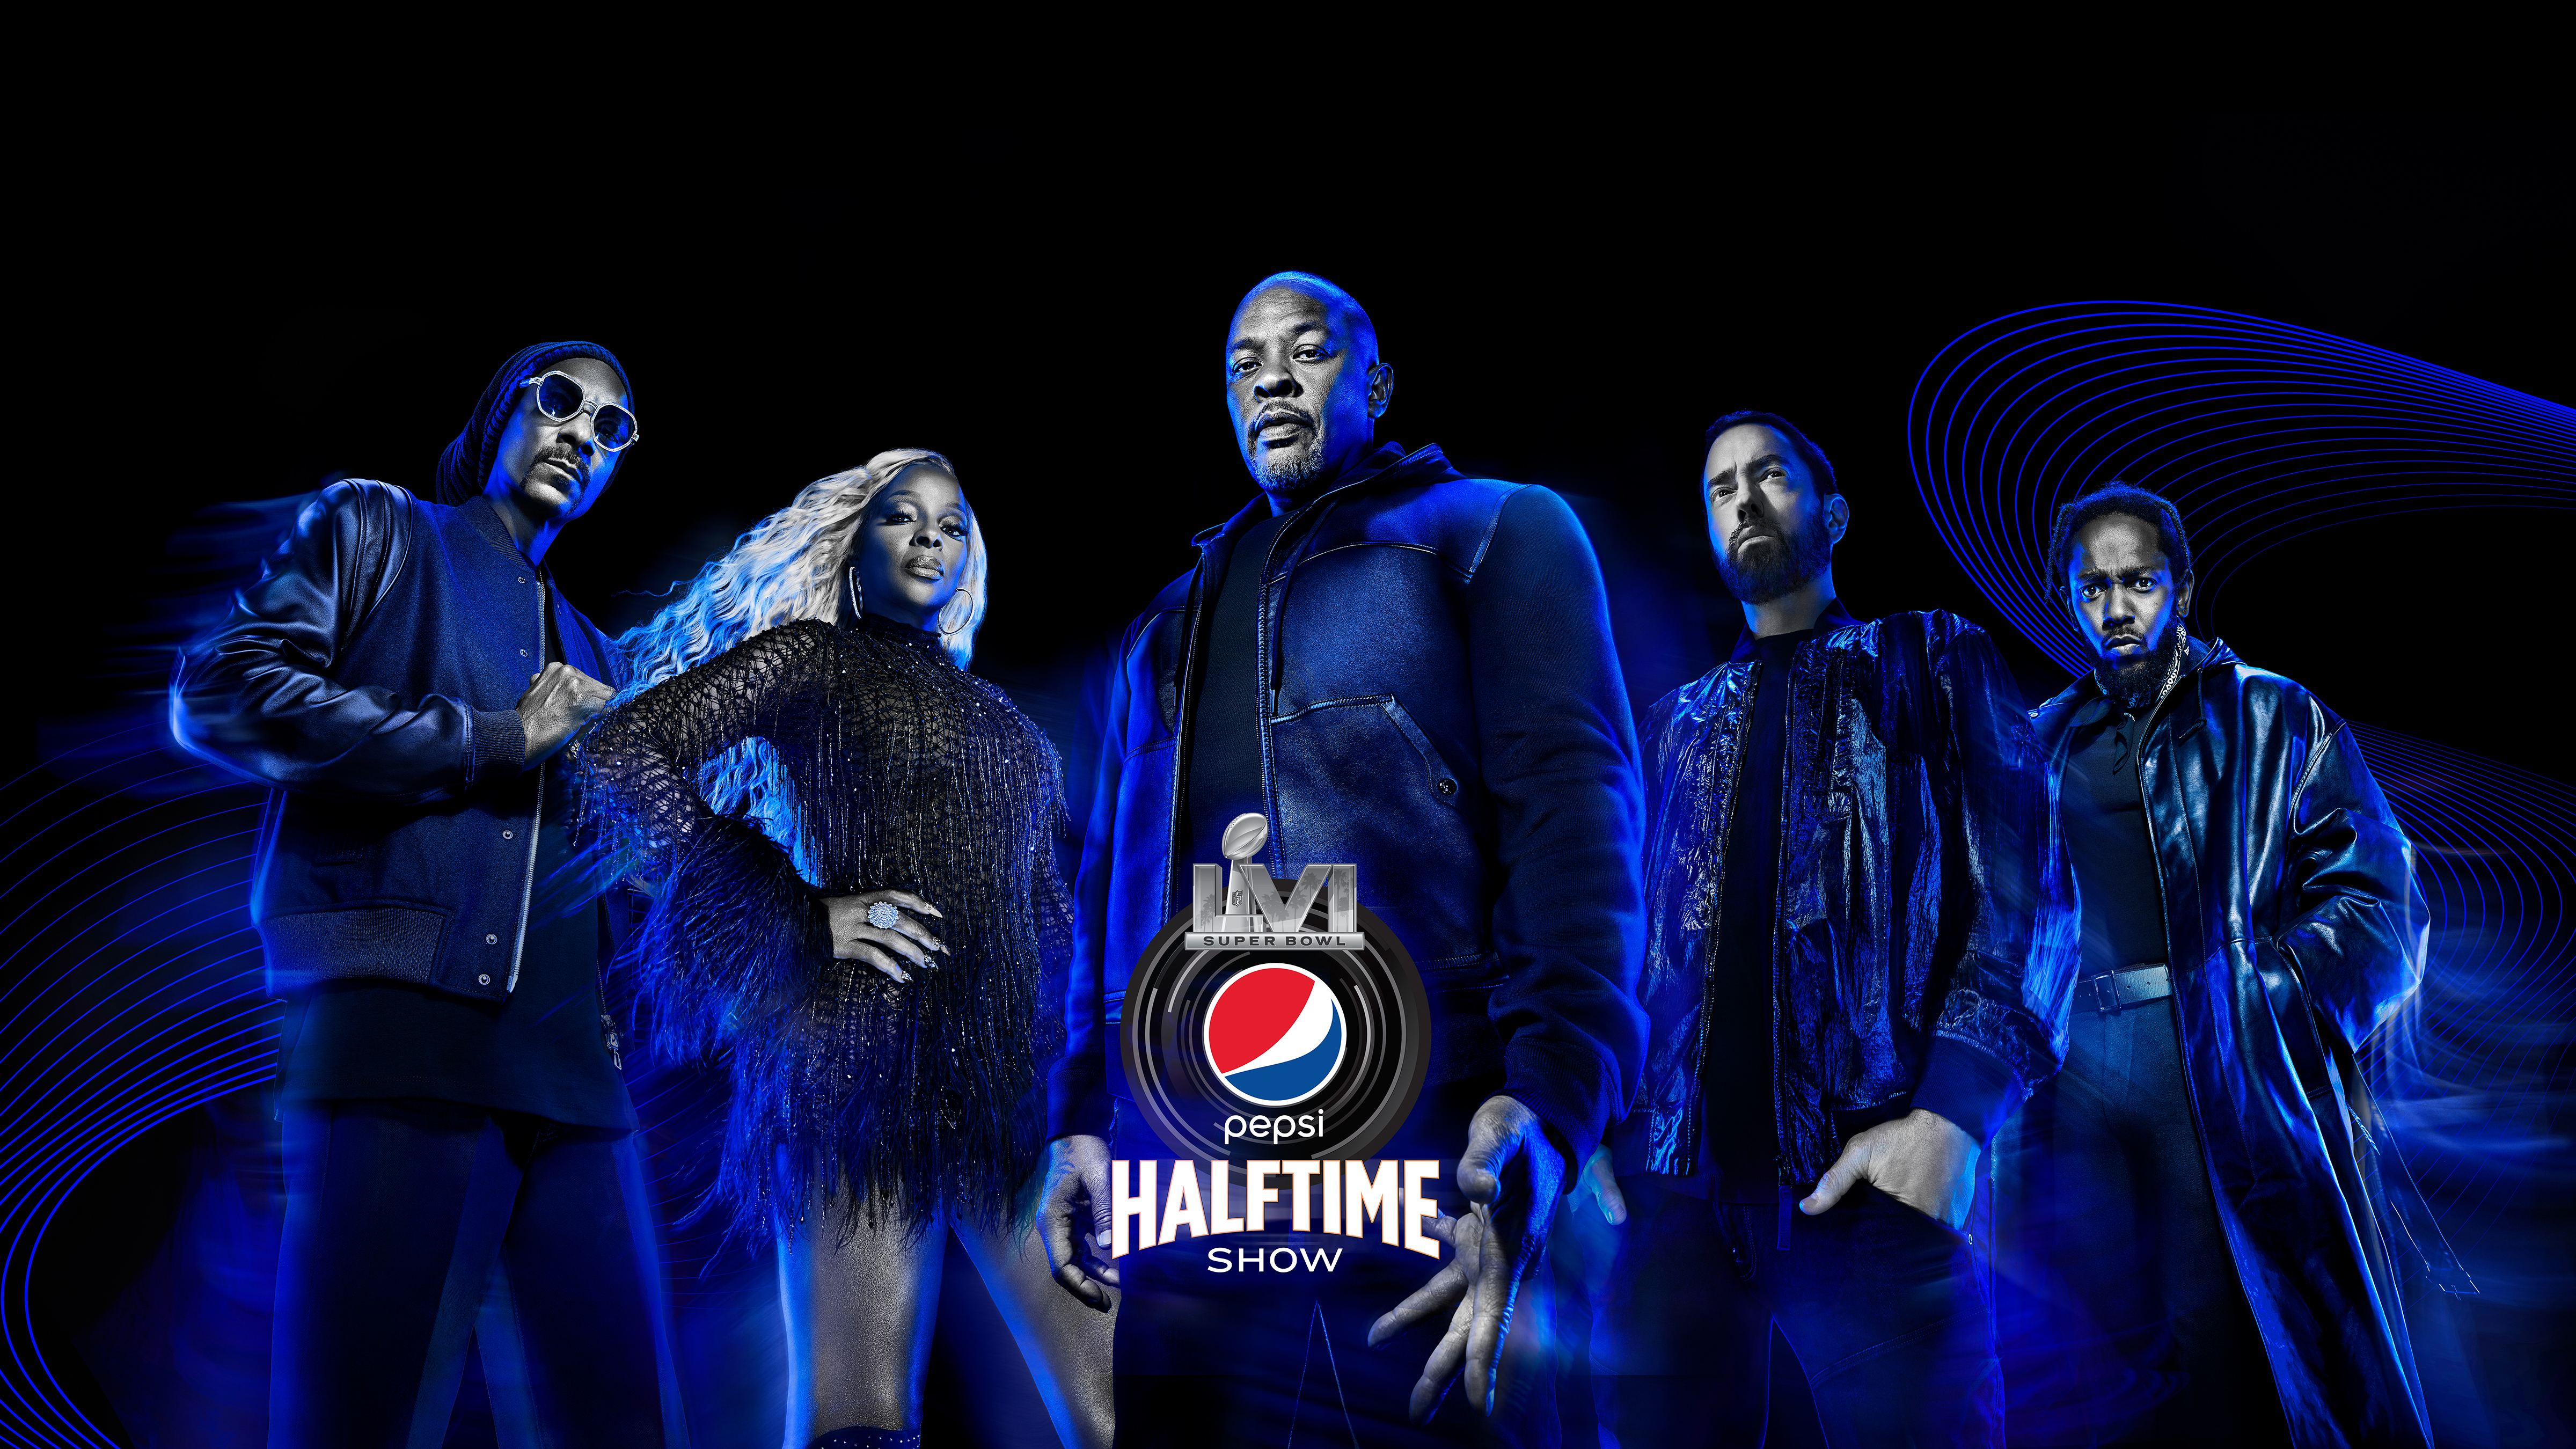 2022 Super Bowl halftime show: Dr. Dre, Eminem, Snoop Dogg, Mary J. Blige  among performers - National | Globalnews.ca